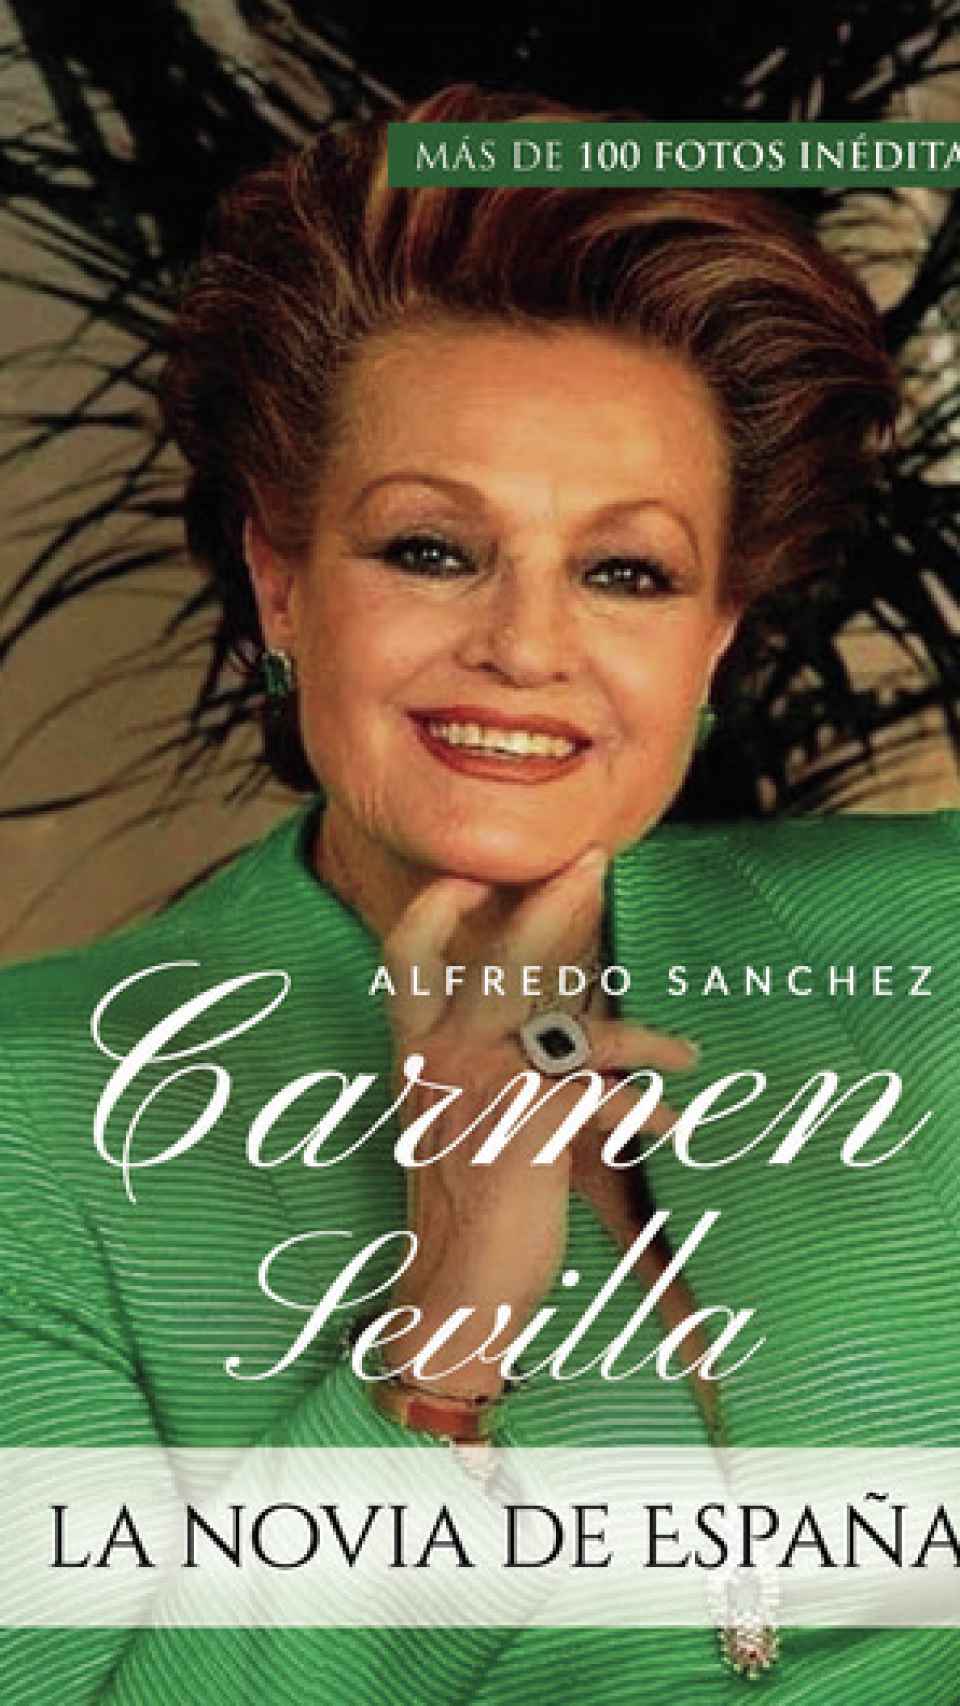 La portada del libro de Sevilla, 'La novia de España'.